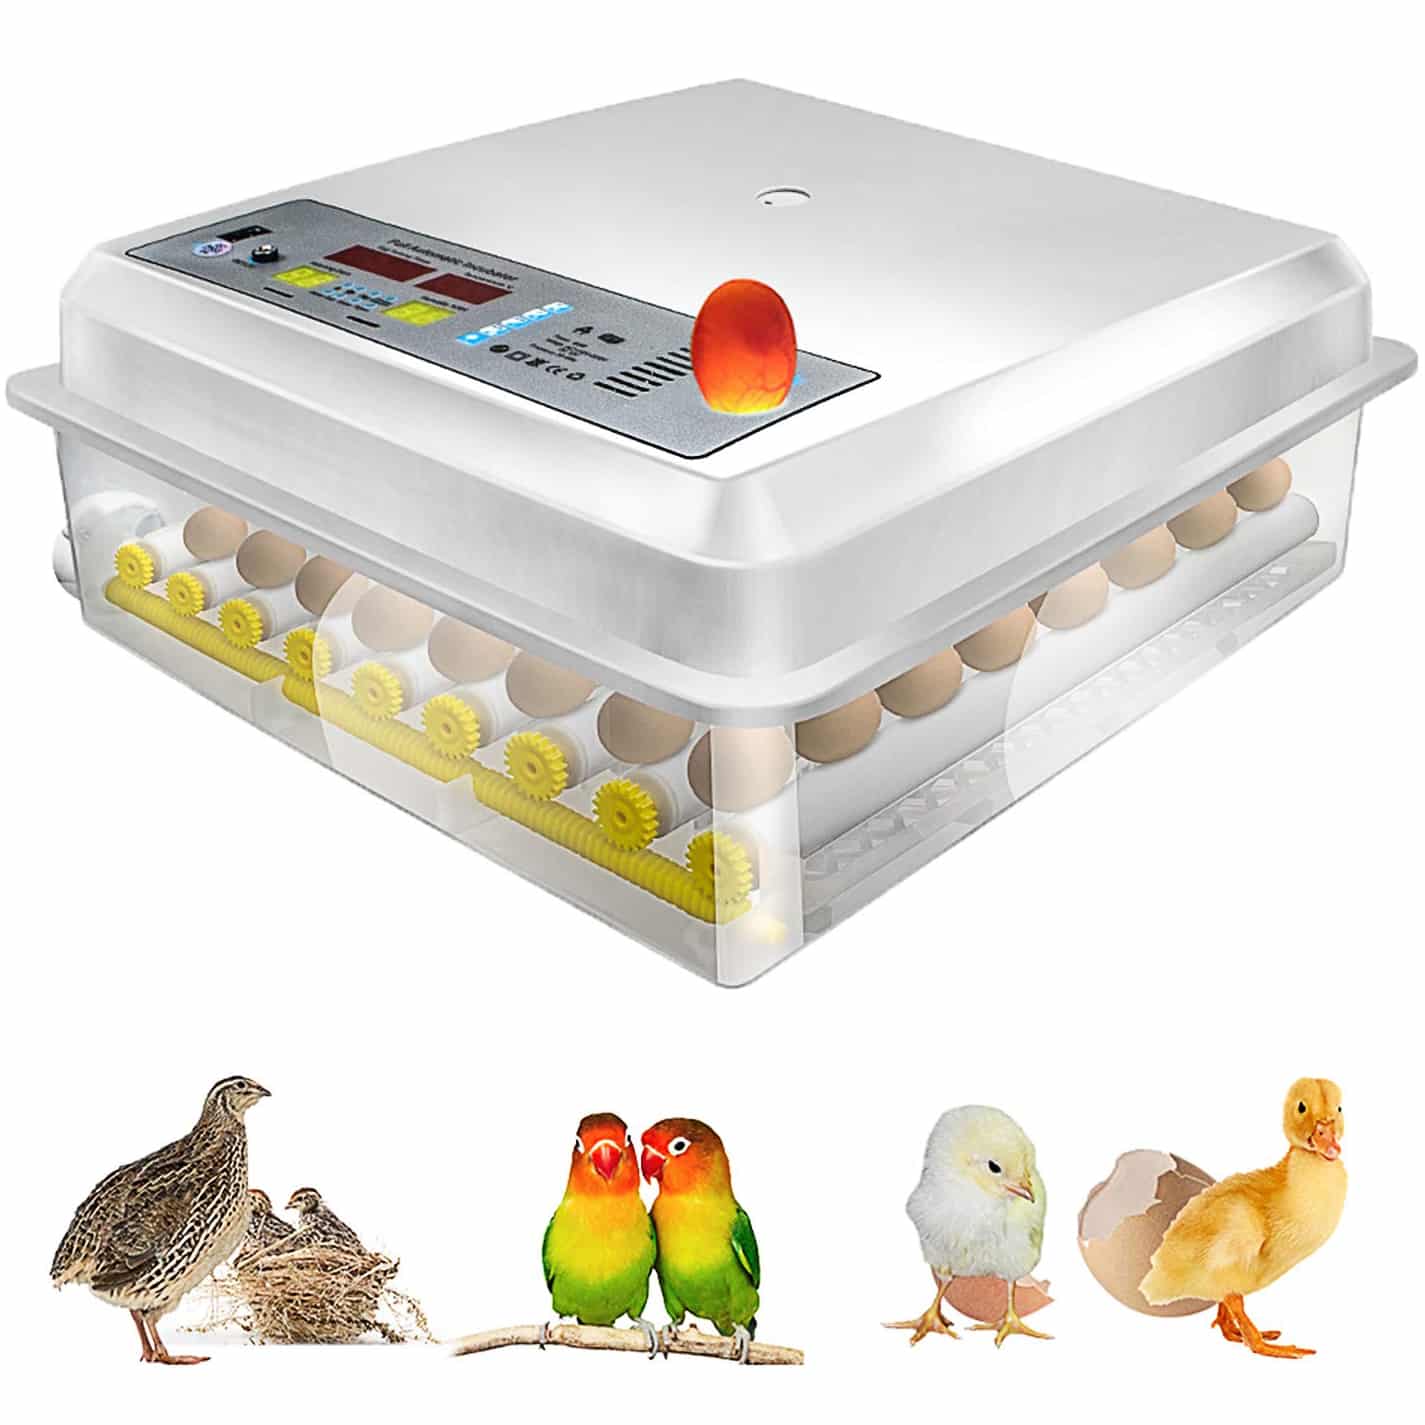 Какой инкубатор автоматический. Инкубатор для яиц Egg incubator. Инкубатор Egg Box 3000. MS 36 инкубатор. Инкубатор для яиц автоматический на 200 яиц.